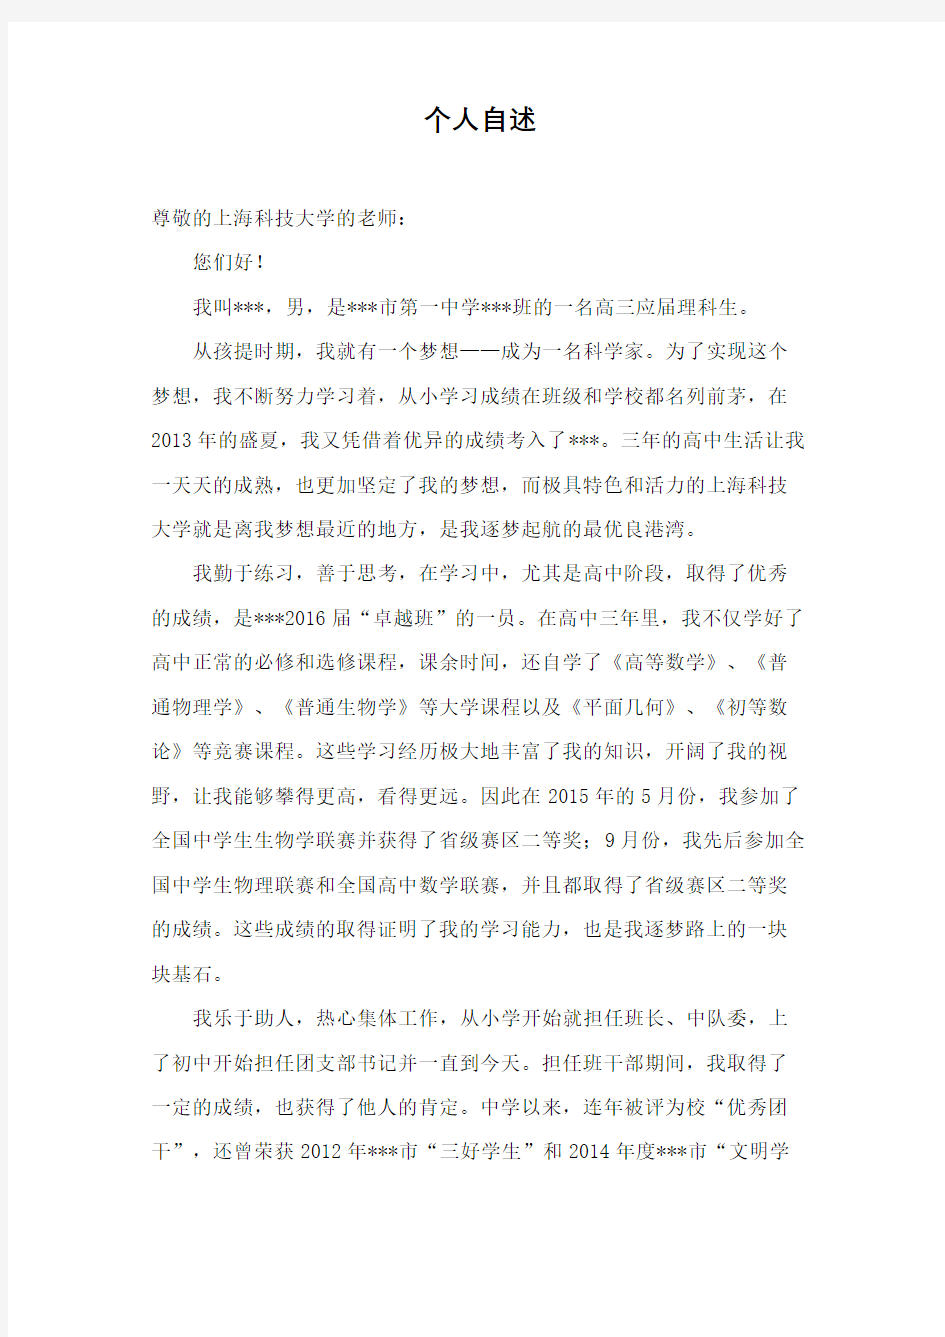 上海科技大学自招自荐信